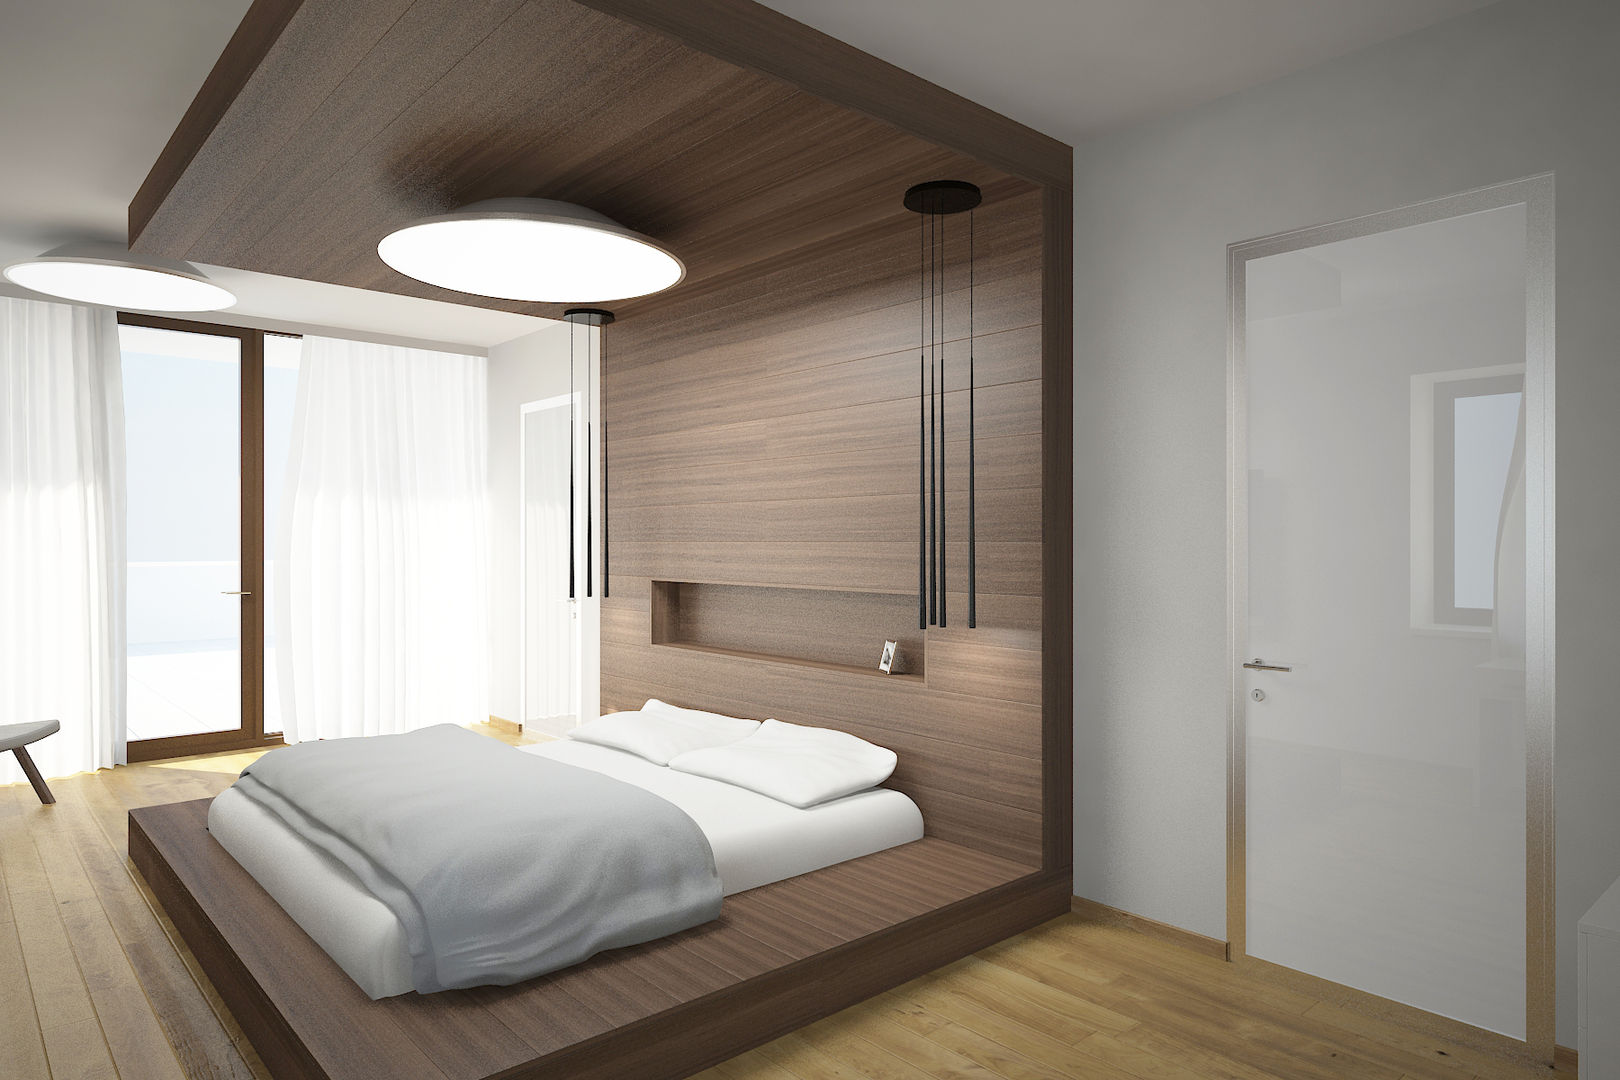 LK villa's interior design, nadine buslaeva interior design nadine buslaeva interior design Minimalist bedroom